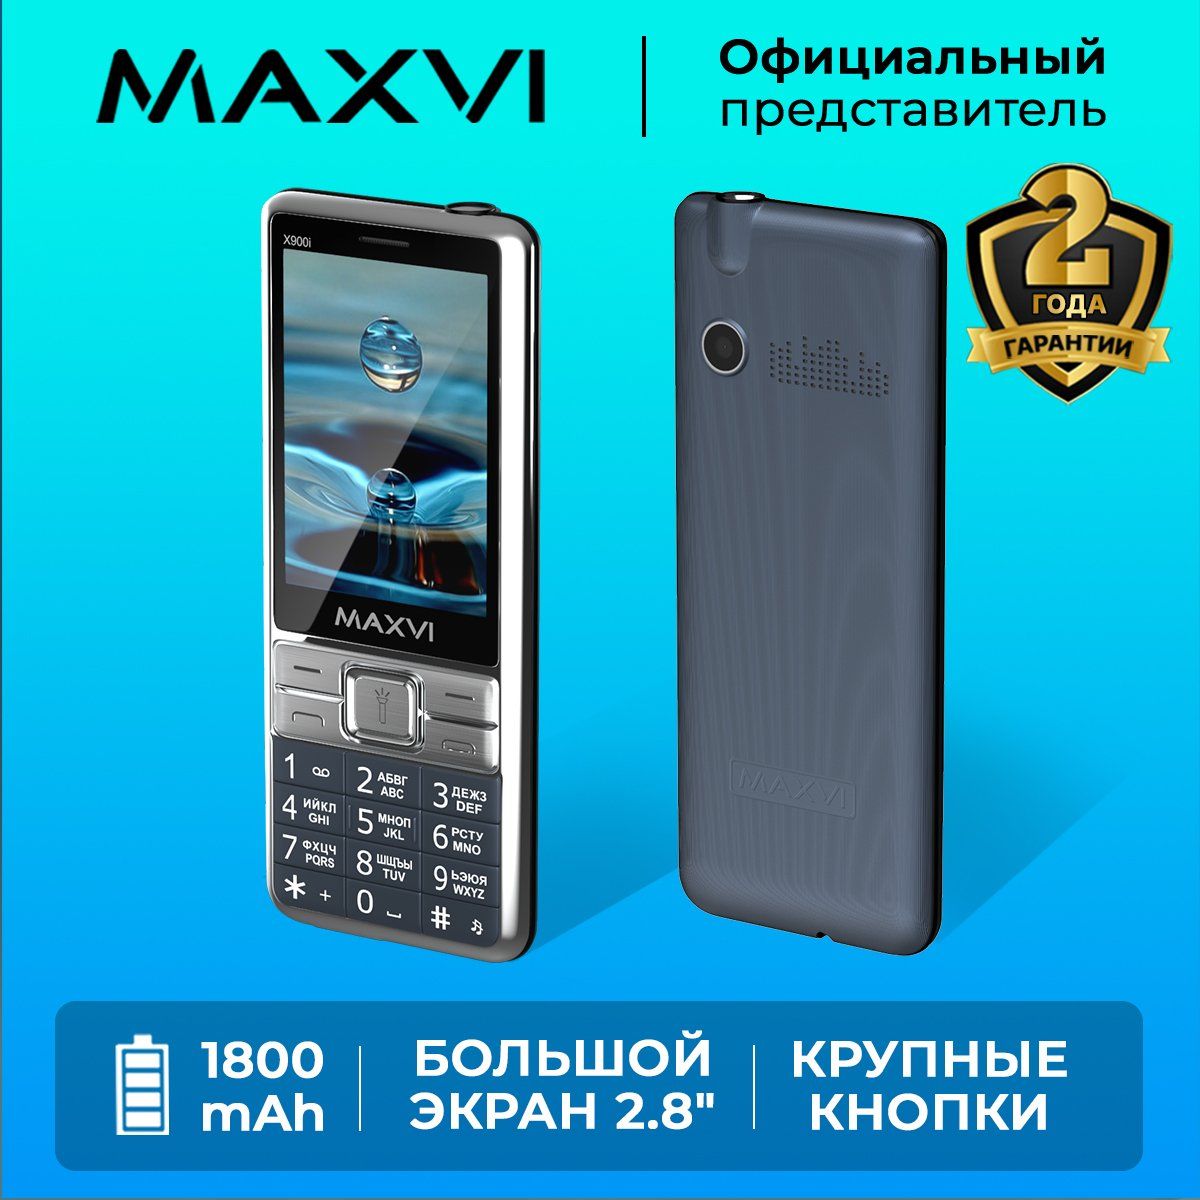 ТелефонкнопочныйMAXVIX900iСиний/Большойэкран